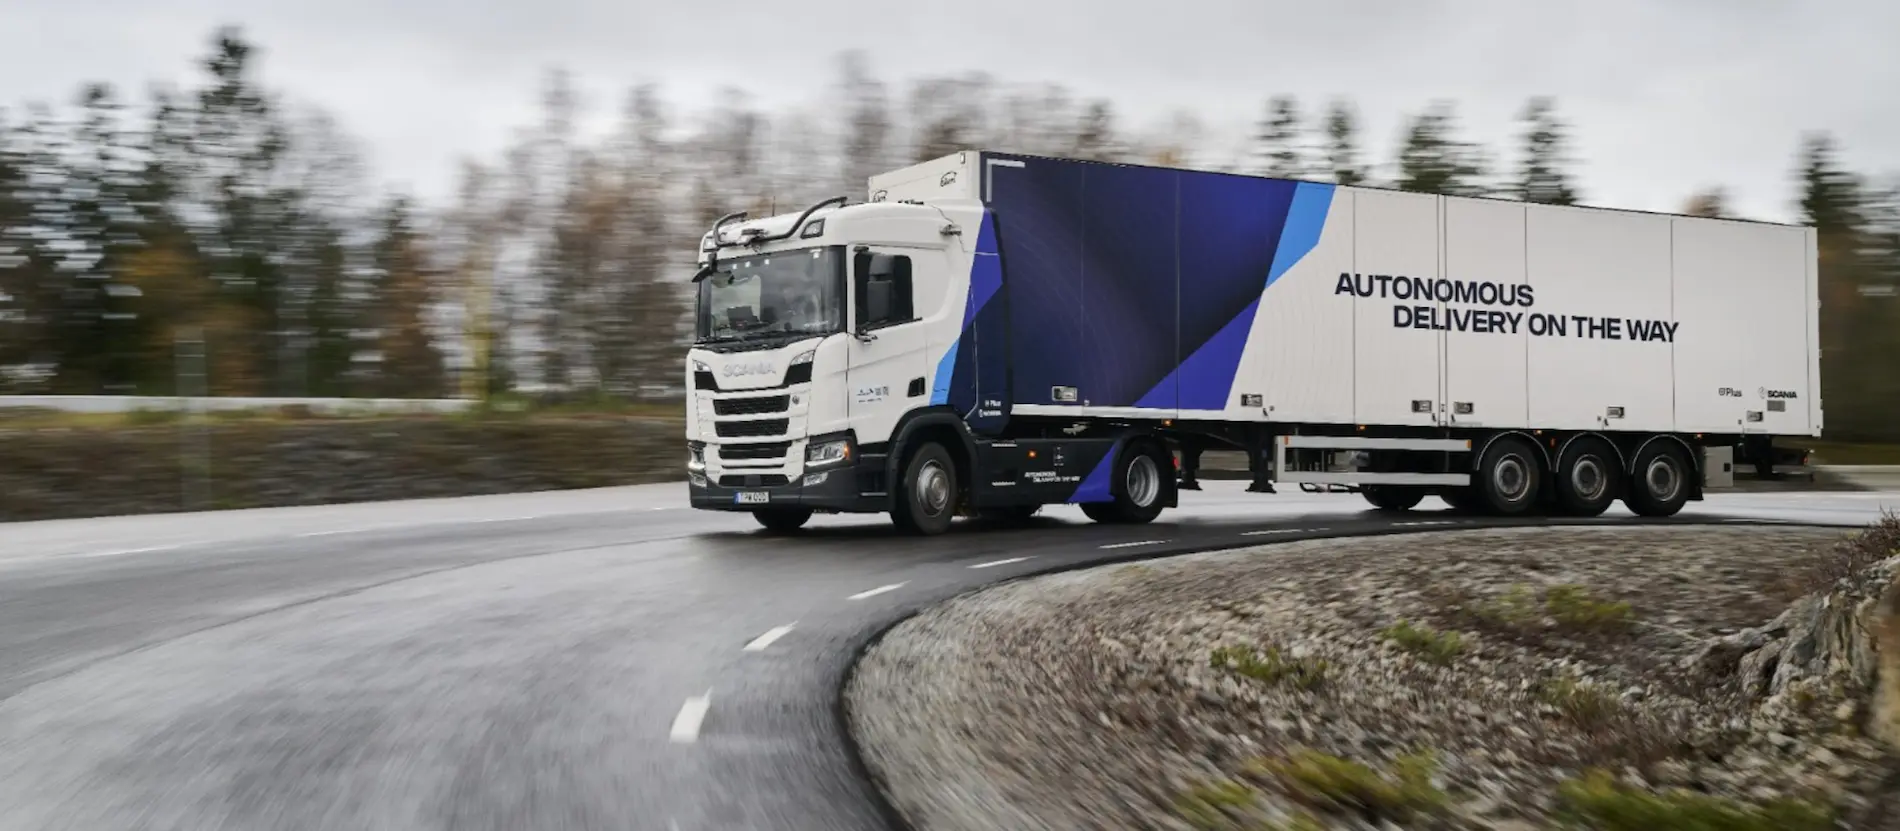 camion autonomo Scania 